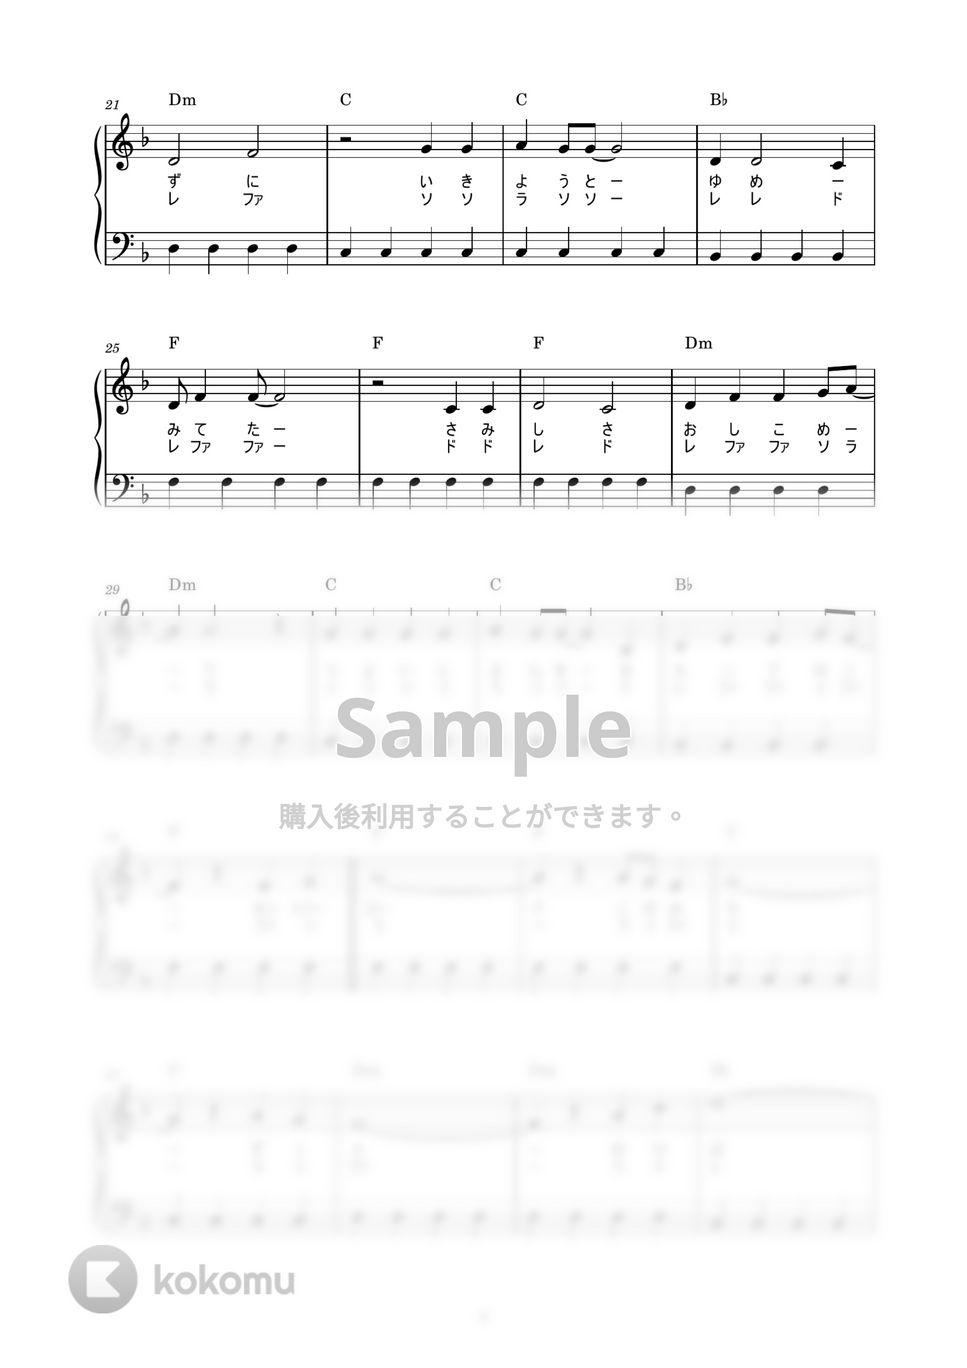 本名陽子 - カントリー・ロード (かんたん / 歌詞付き / ドレミ付き / 初心者) by piano.tokyo